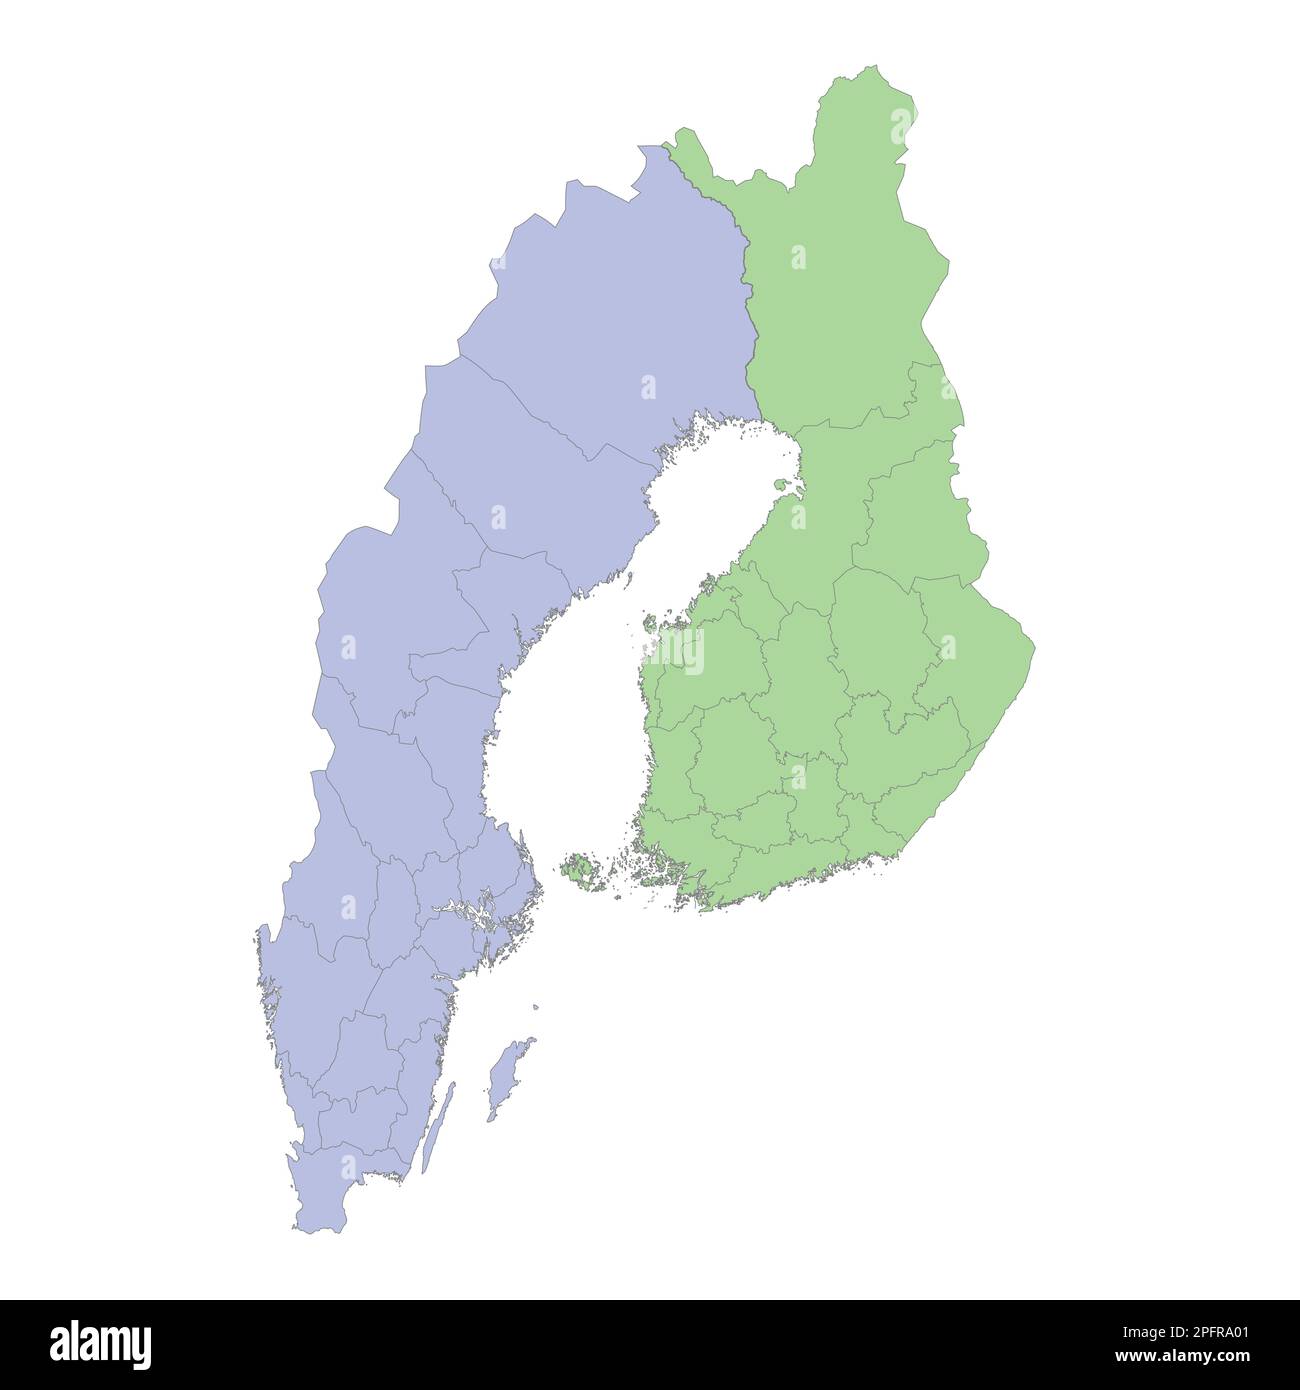 Mappa politica di alta qualità della Svezia e della Finlandia con i confini delle regioni o delle province. Illustrazione vettoriale Illustrazione Vettoriale